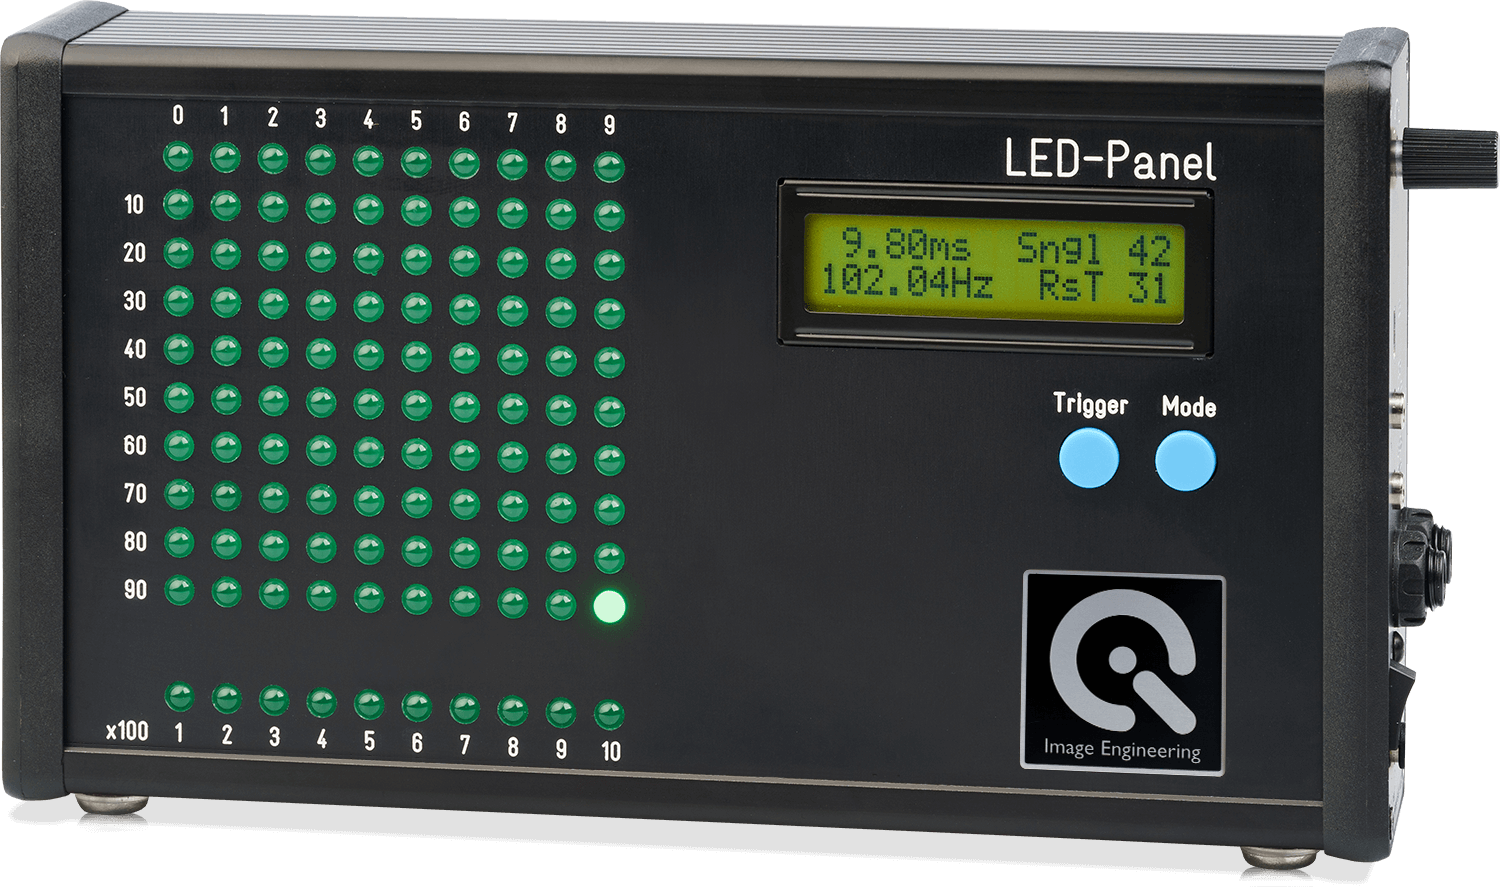 LED-Panel product image